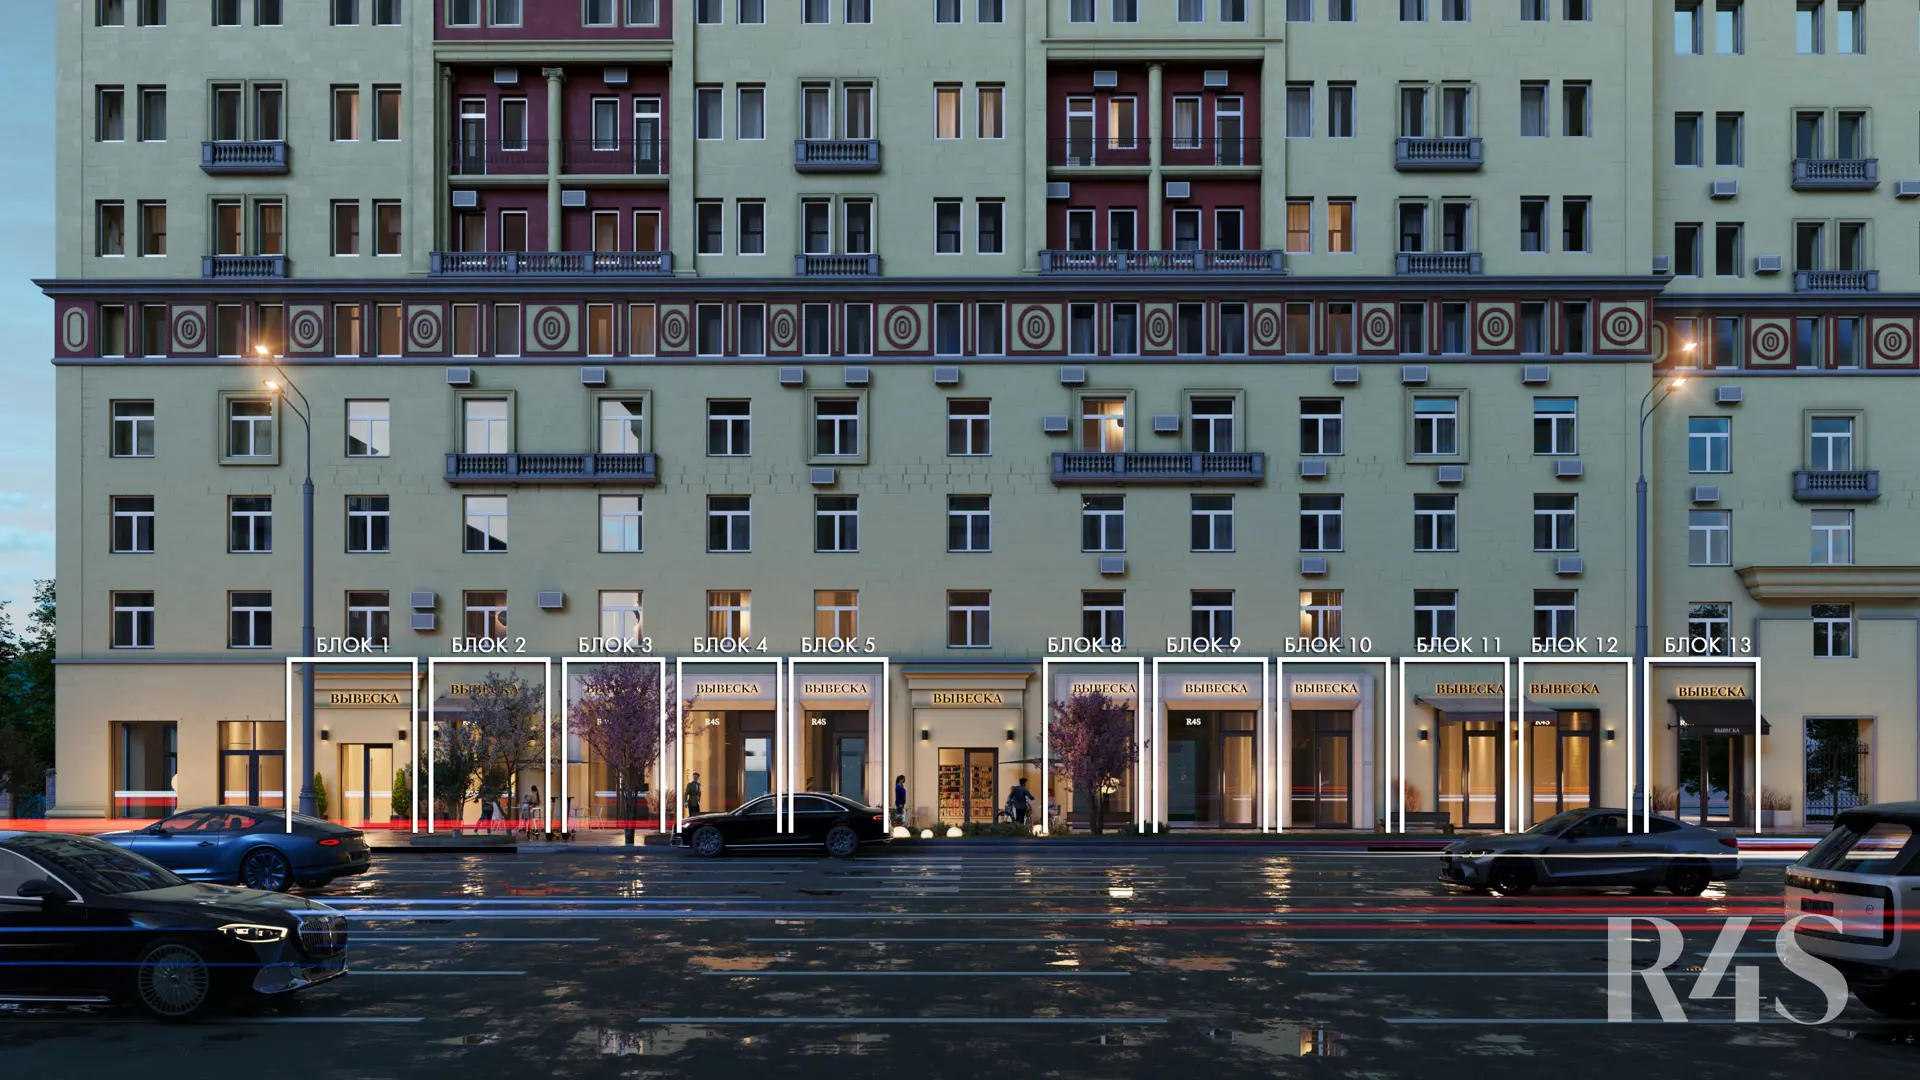 Аренда торговых помещений площадью 14.6 - 91.7 м2 в Москве:  Земляной Вал, 25 R4S | Realty4Sale